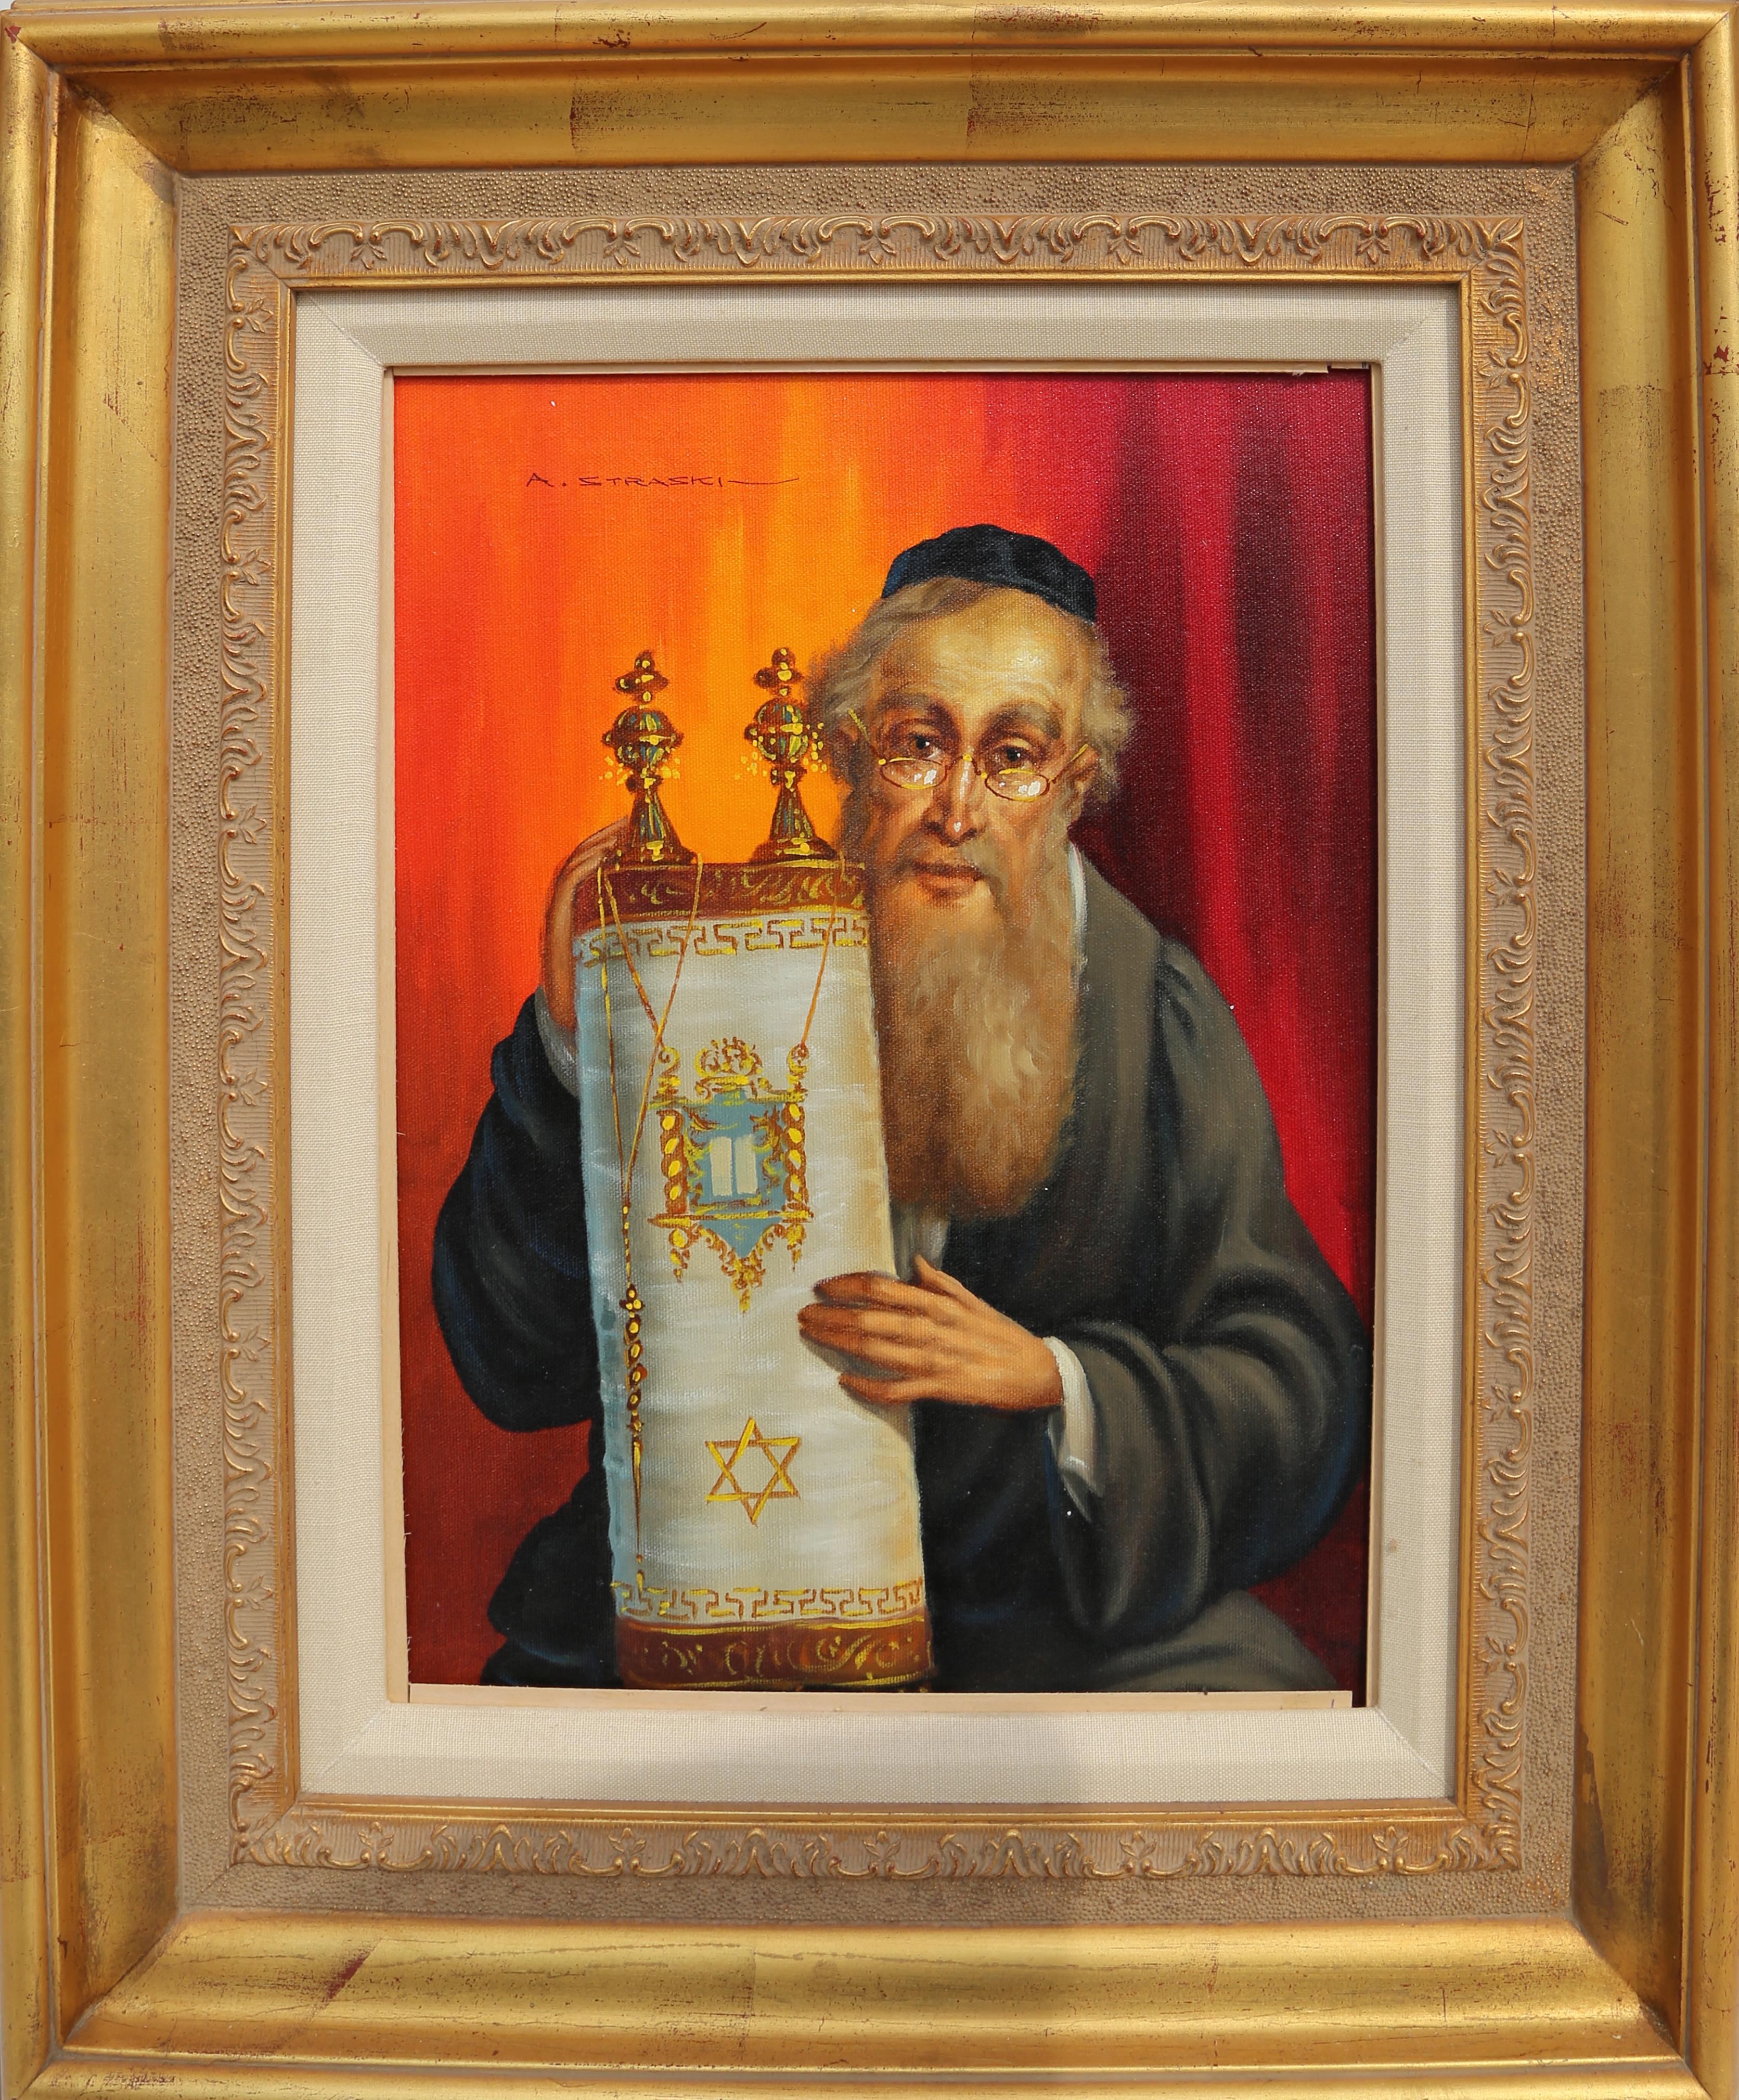 Artiste : Abraham Straski, polonais (1903 - 1987)
Titre : Rabbin et Torah
Année : vers 1957
Moyen : Huile sur toile, signé à gauche.
Taille de l'image : 16 x 12 pouces
Taille du cadre : 26 x 20 pouces
